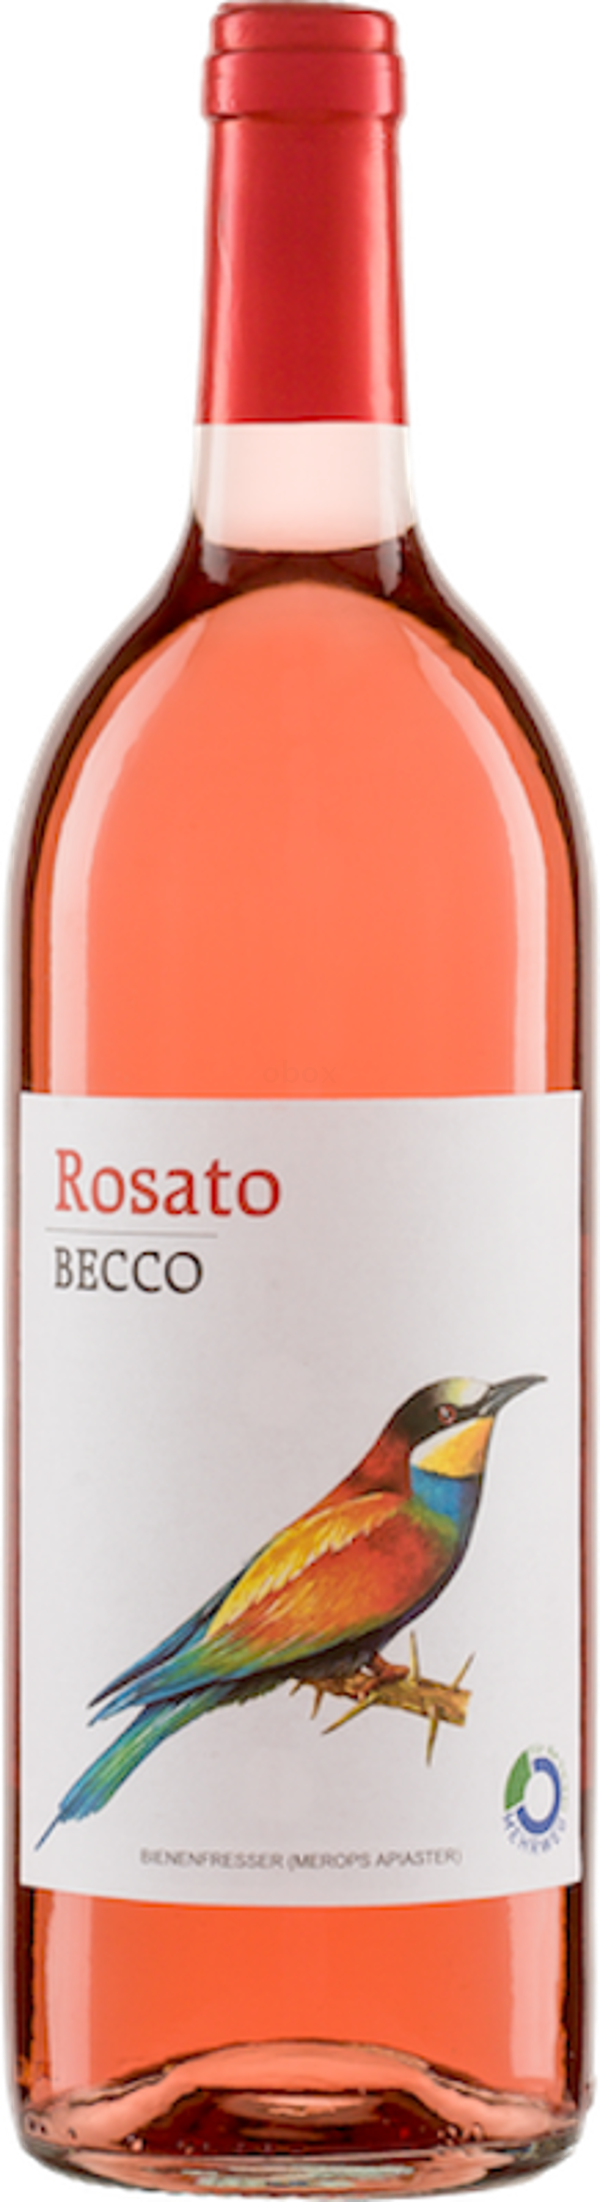 Produktfoto zu Becco Rosato, 1 l